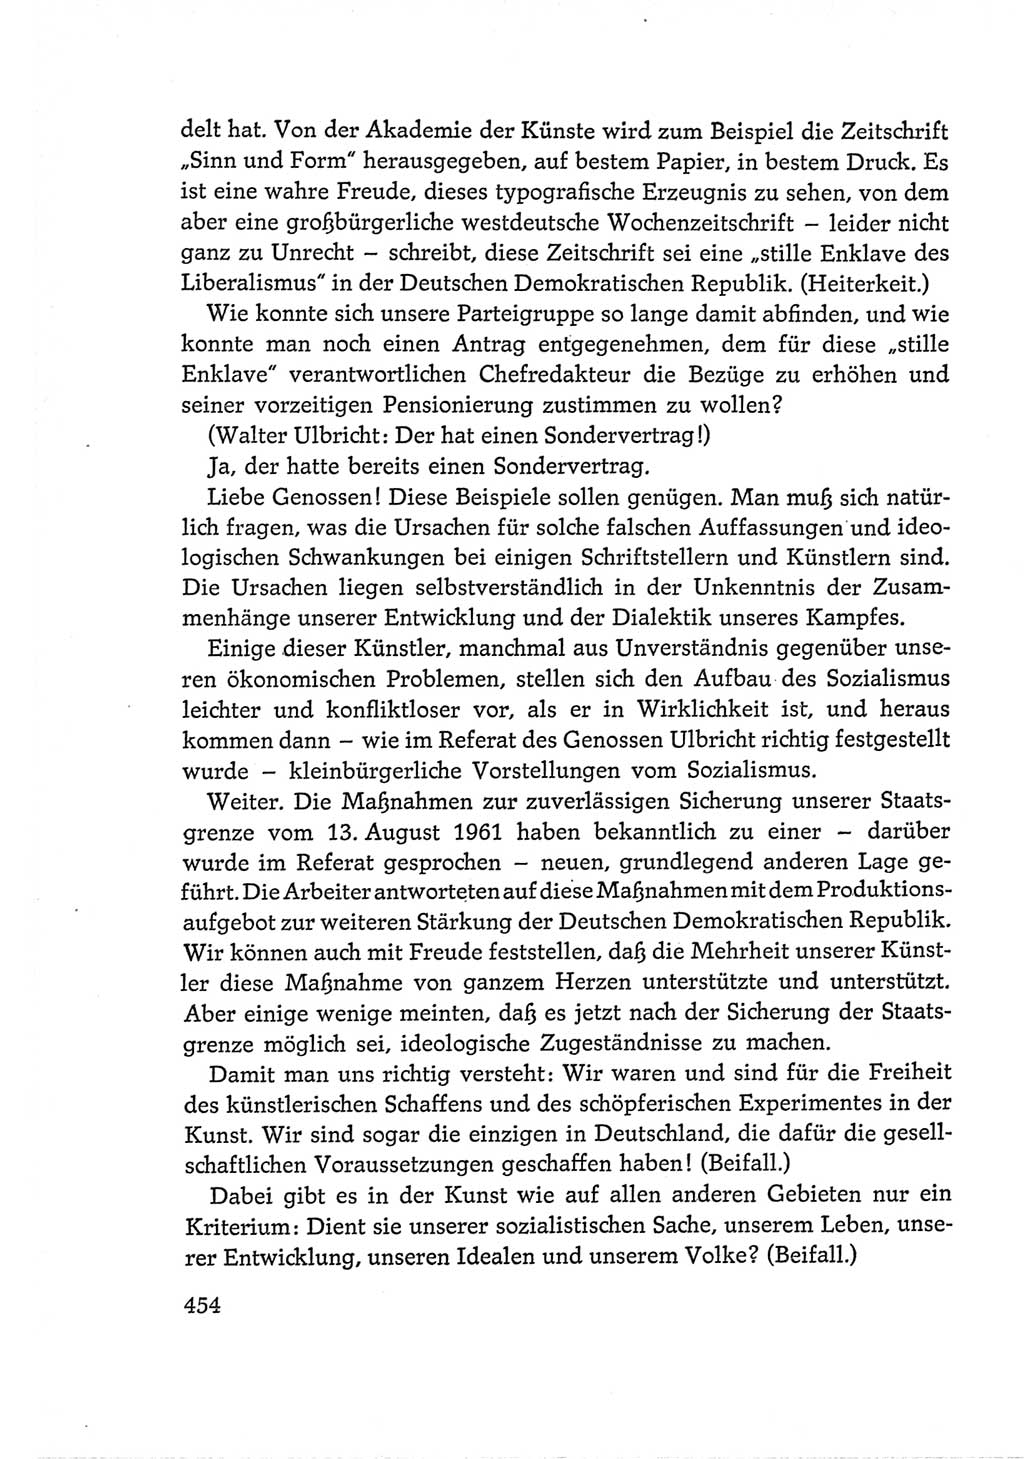 Protokoll der Verhandlungen des Ⅵ. Parteitages der Sozialistischen Einheitspartei Deutschlands (SED) [Deutsche Demokratische Republik (DDR)] 1963, Band Ⅰ, Seite 454 (Prot. Verh. Ⅵ. PT SED DDR 1963, Bd. Ⅰ, S. 454)